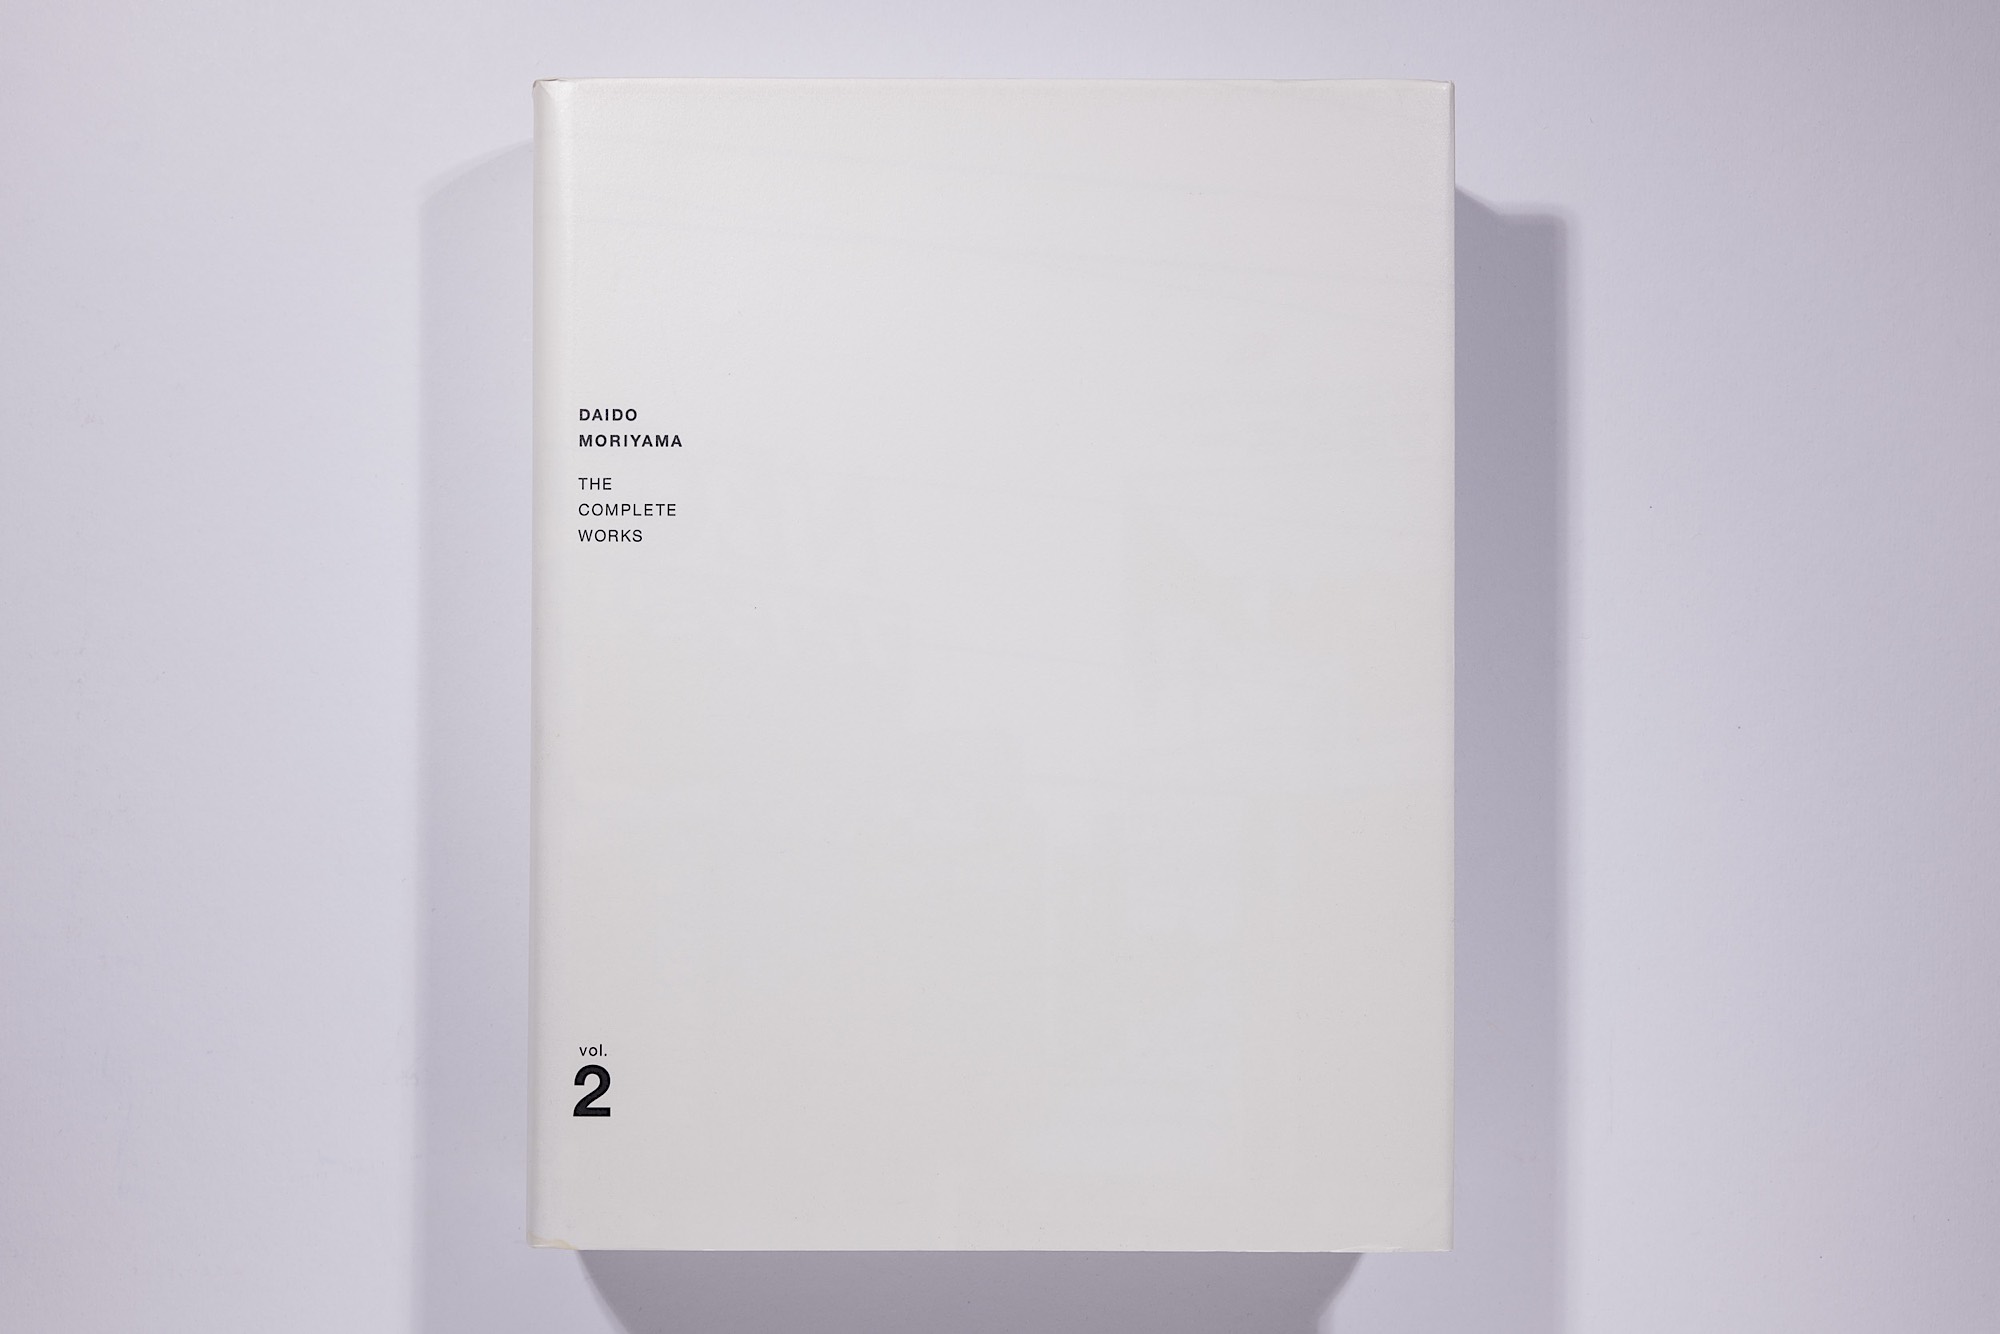 Daido Moriyama - The Complete Works of Daido Moriyama Image 42